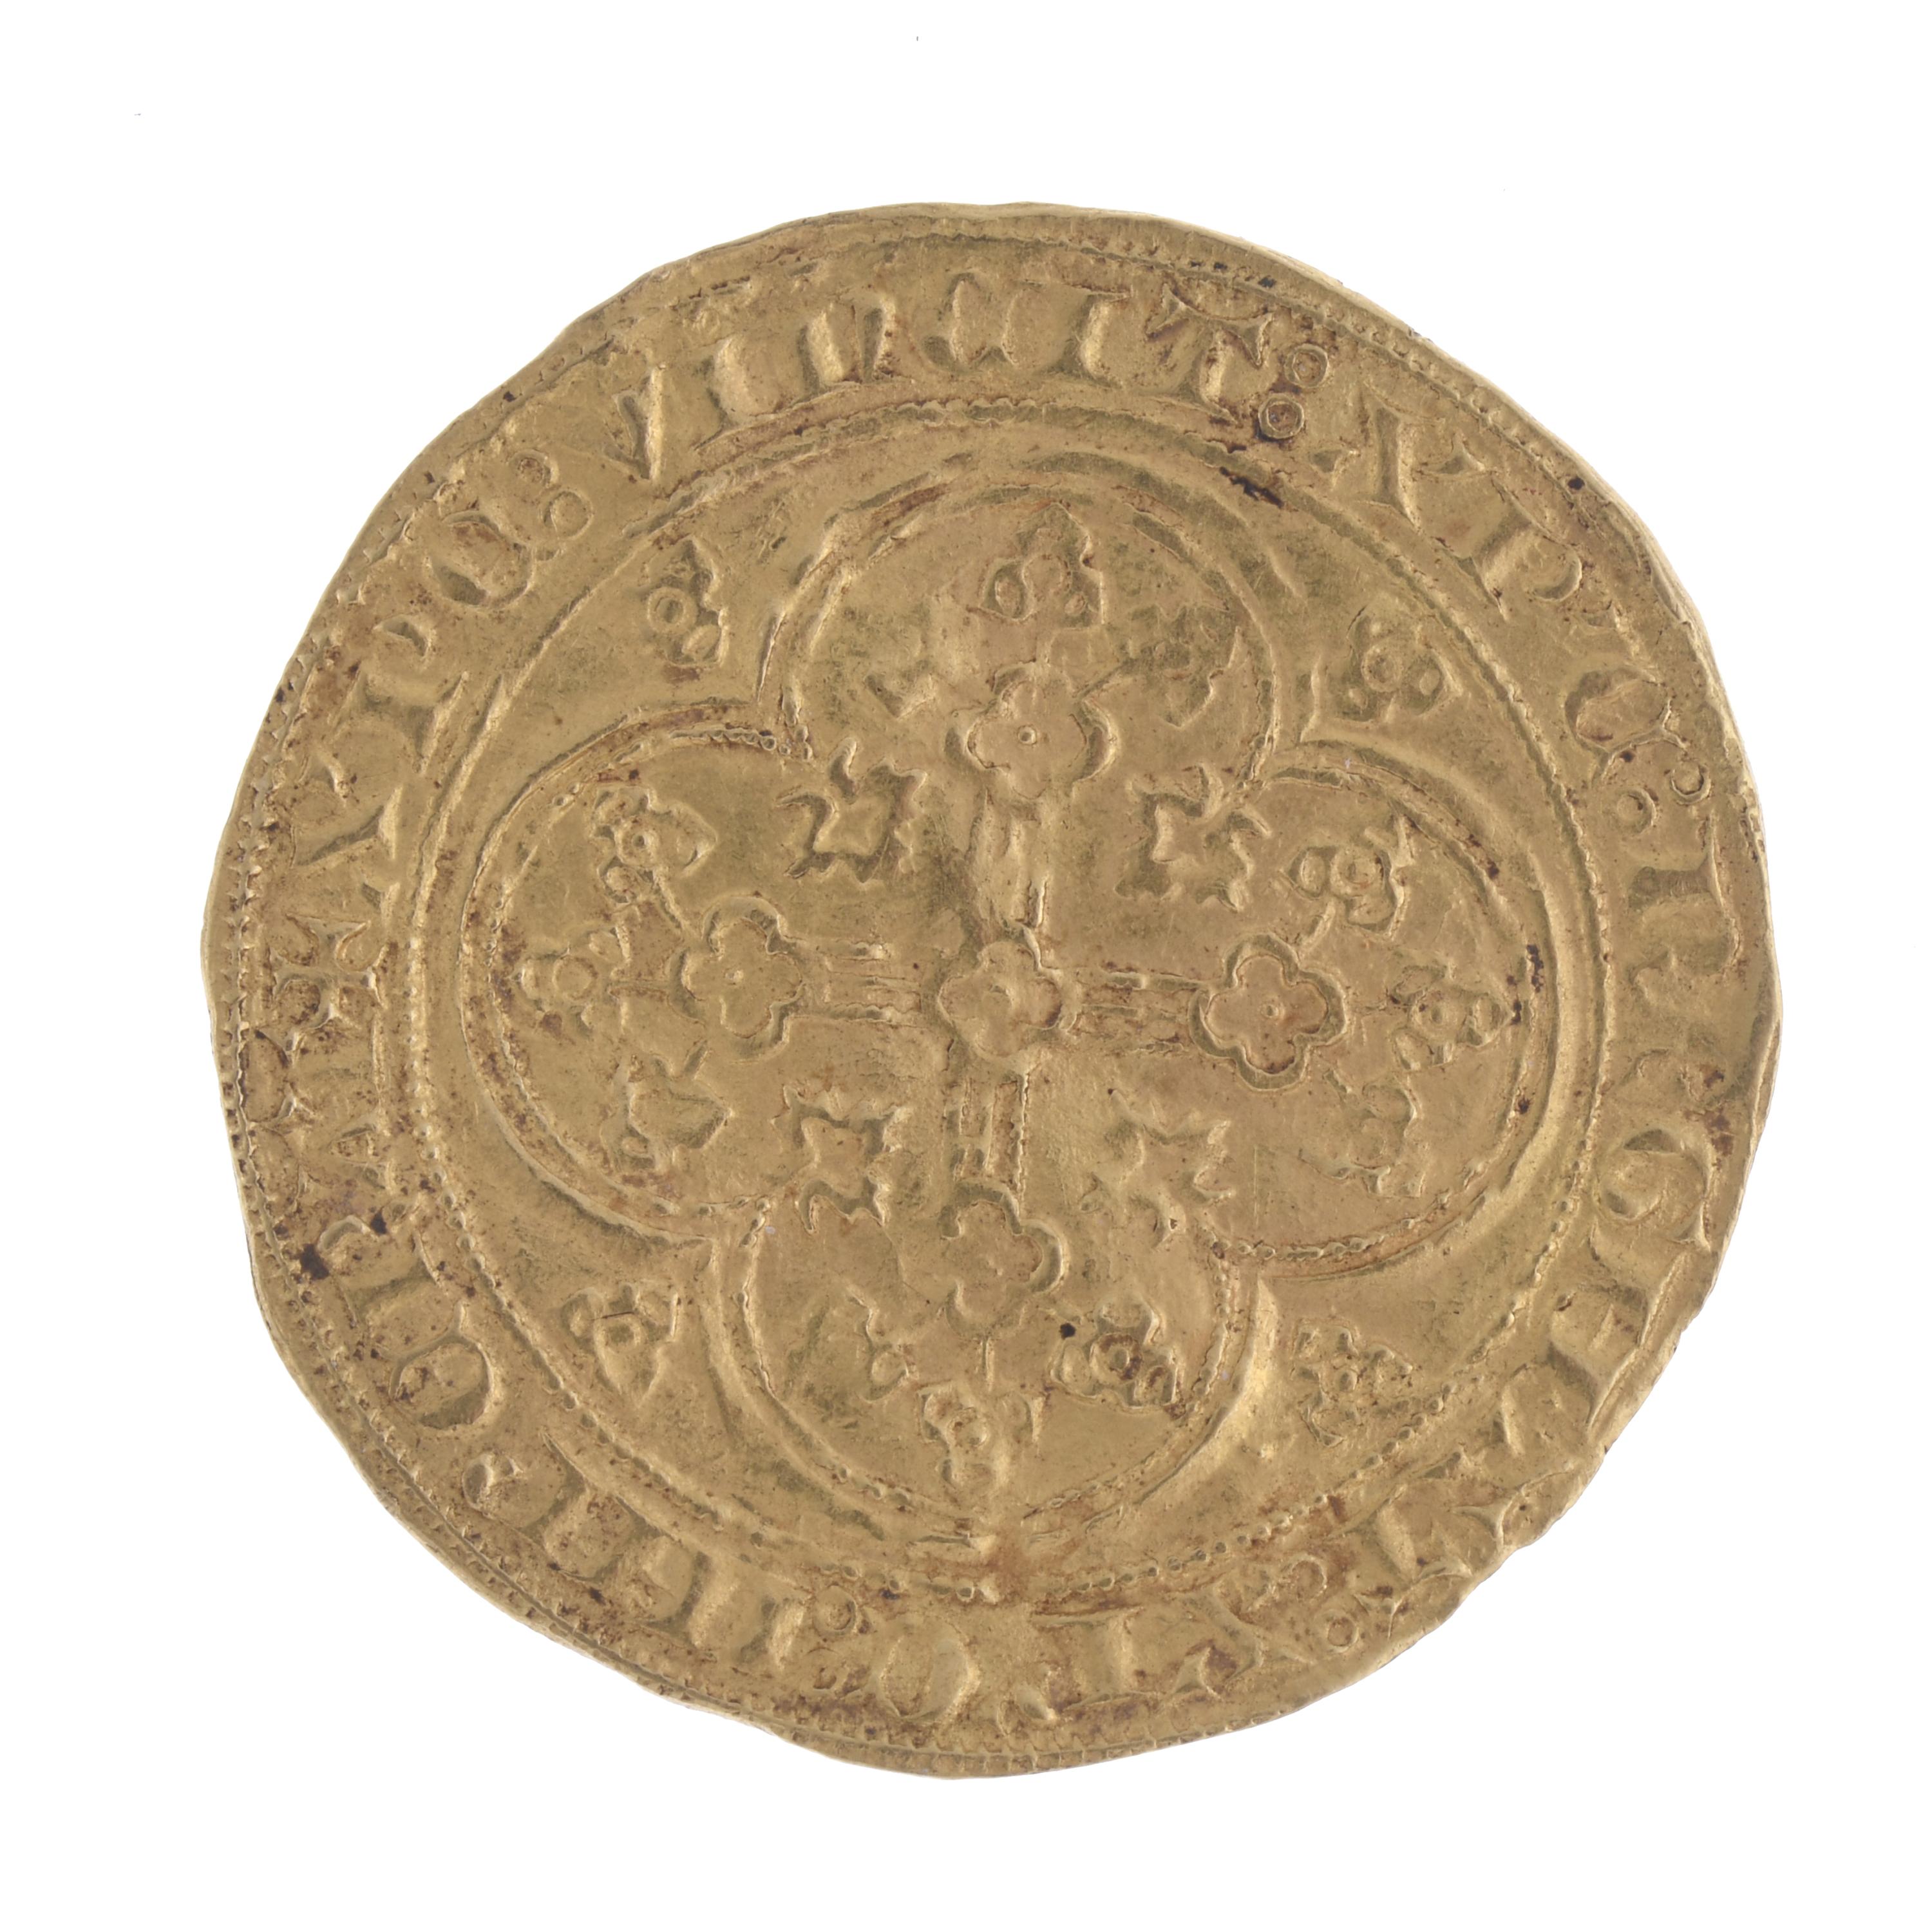 MONEDA PHILIPPE VI DE VALOIS.1328-1350.